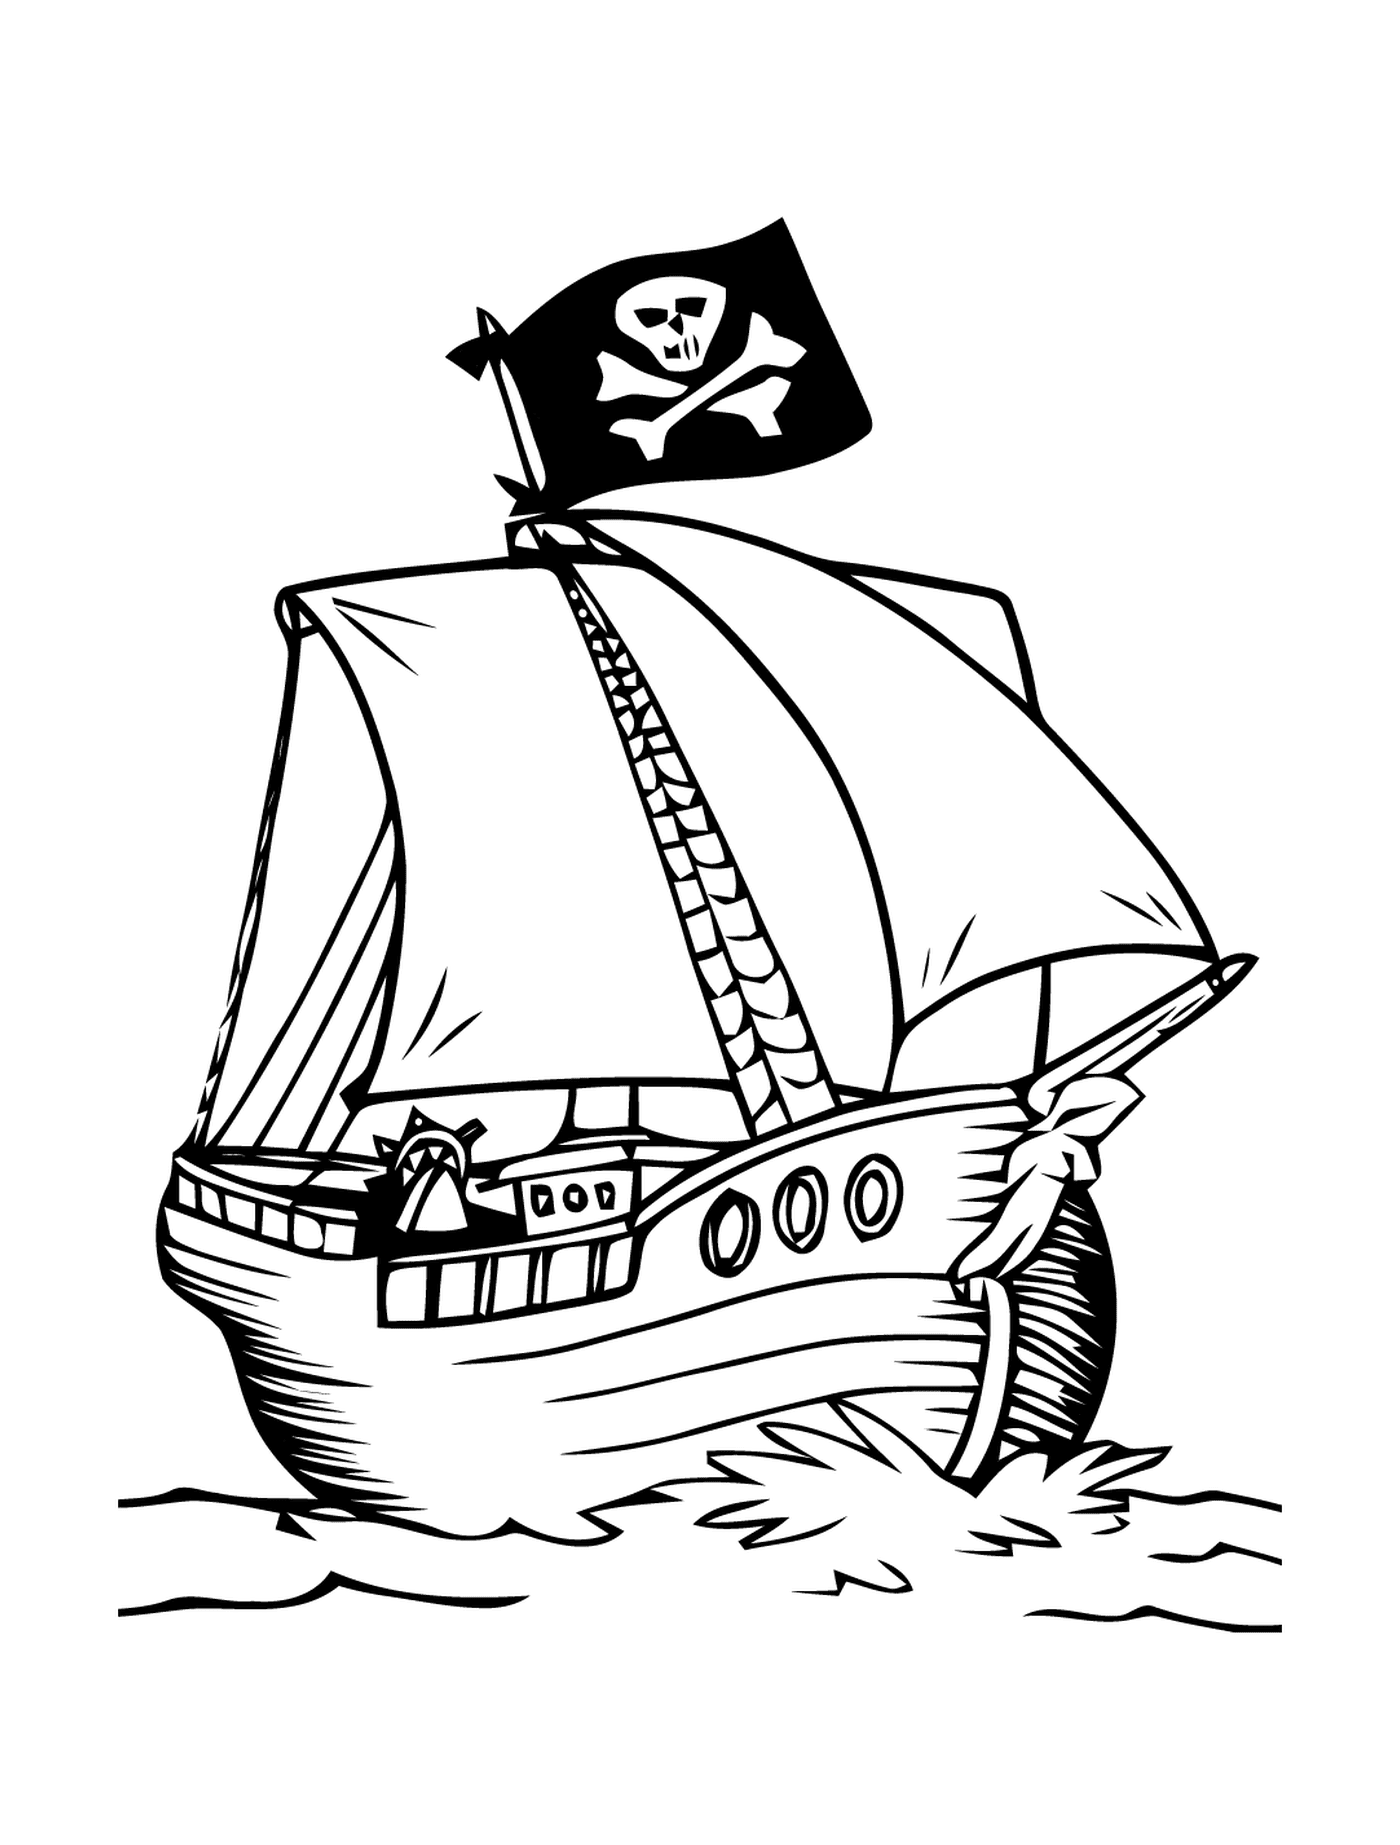  悬挂可怕旗帜的海盗船 